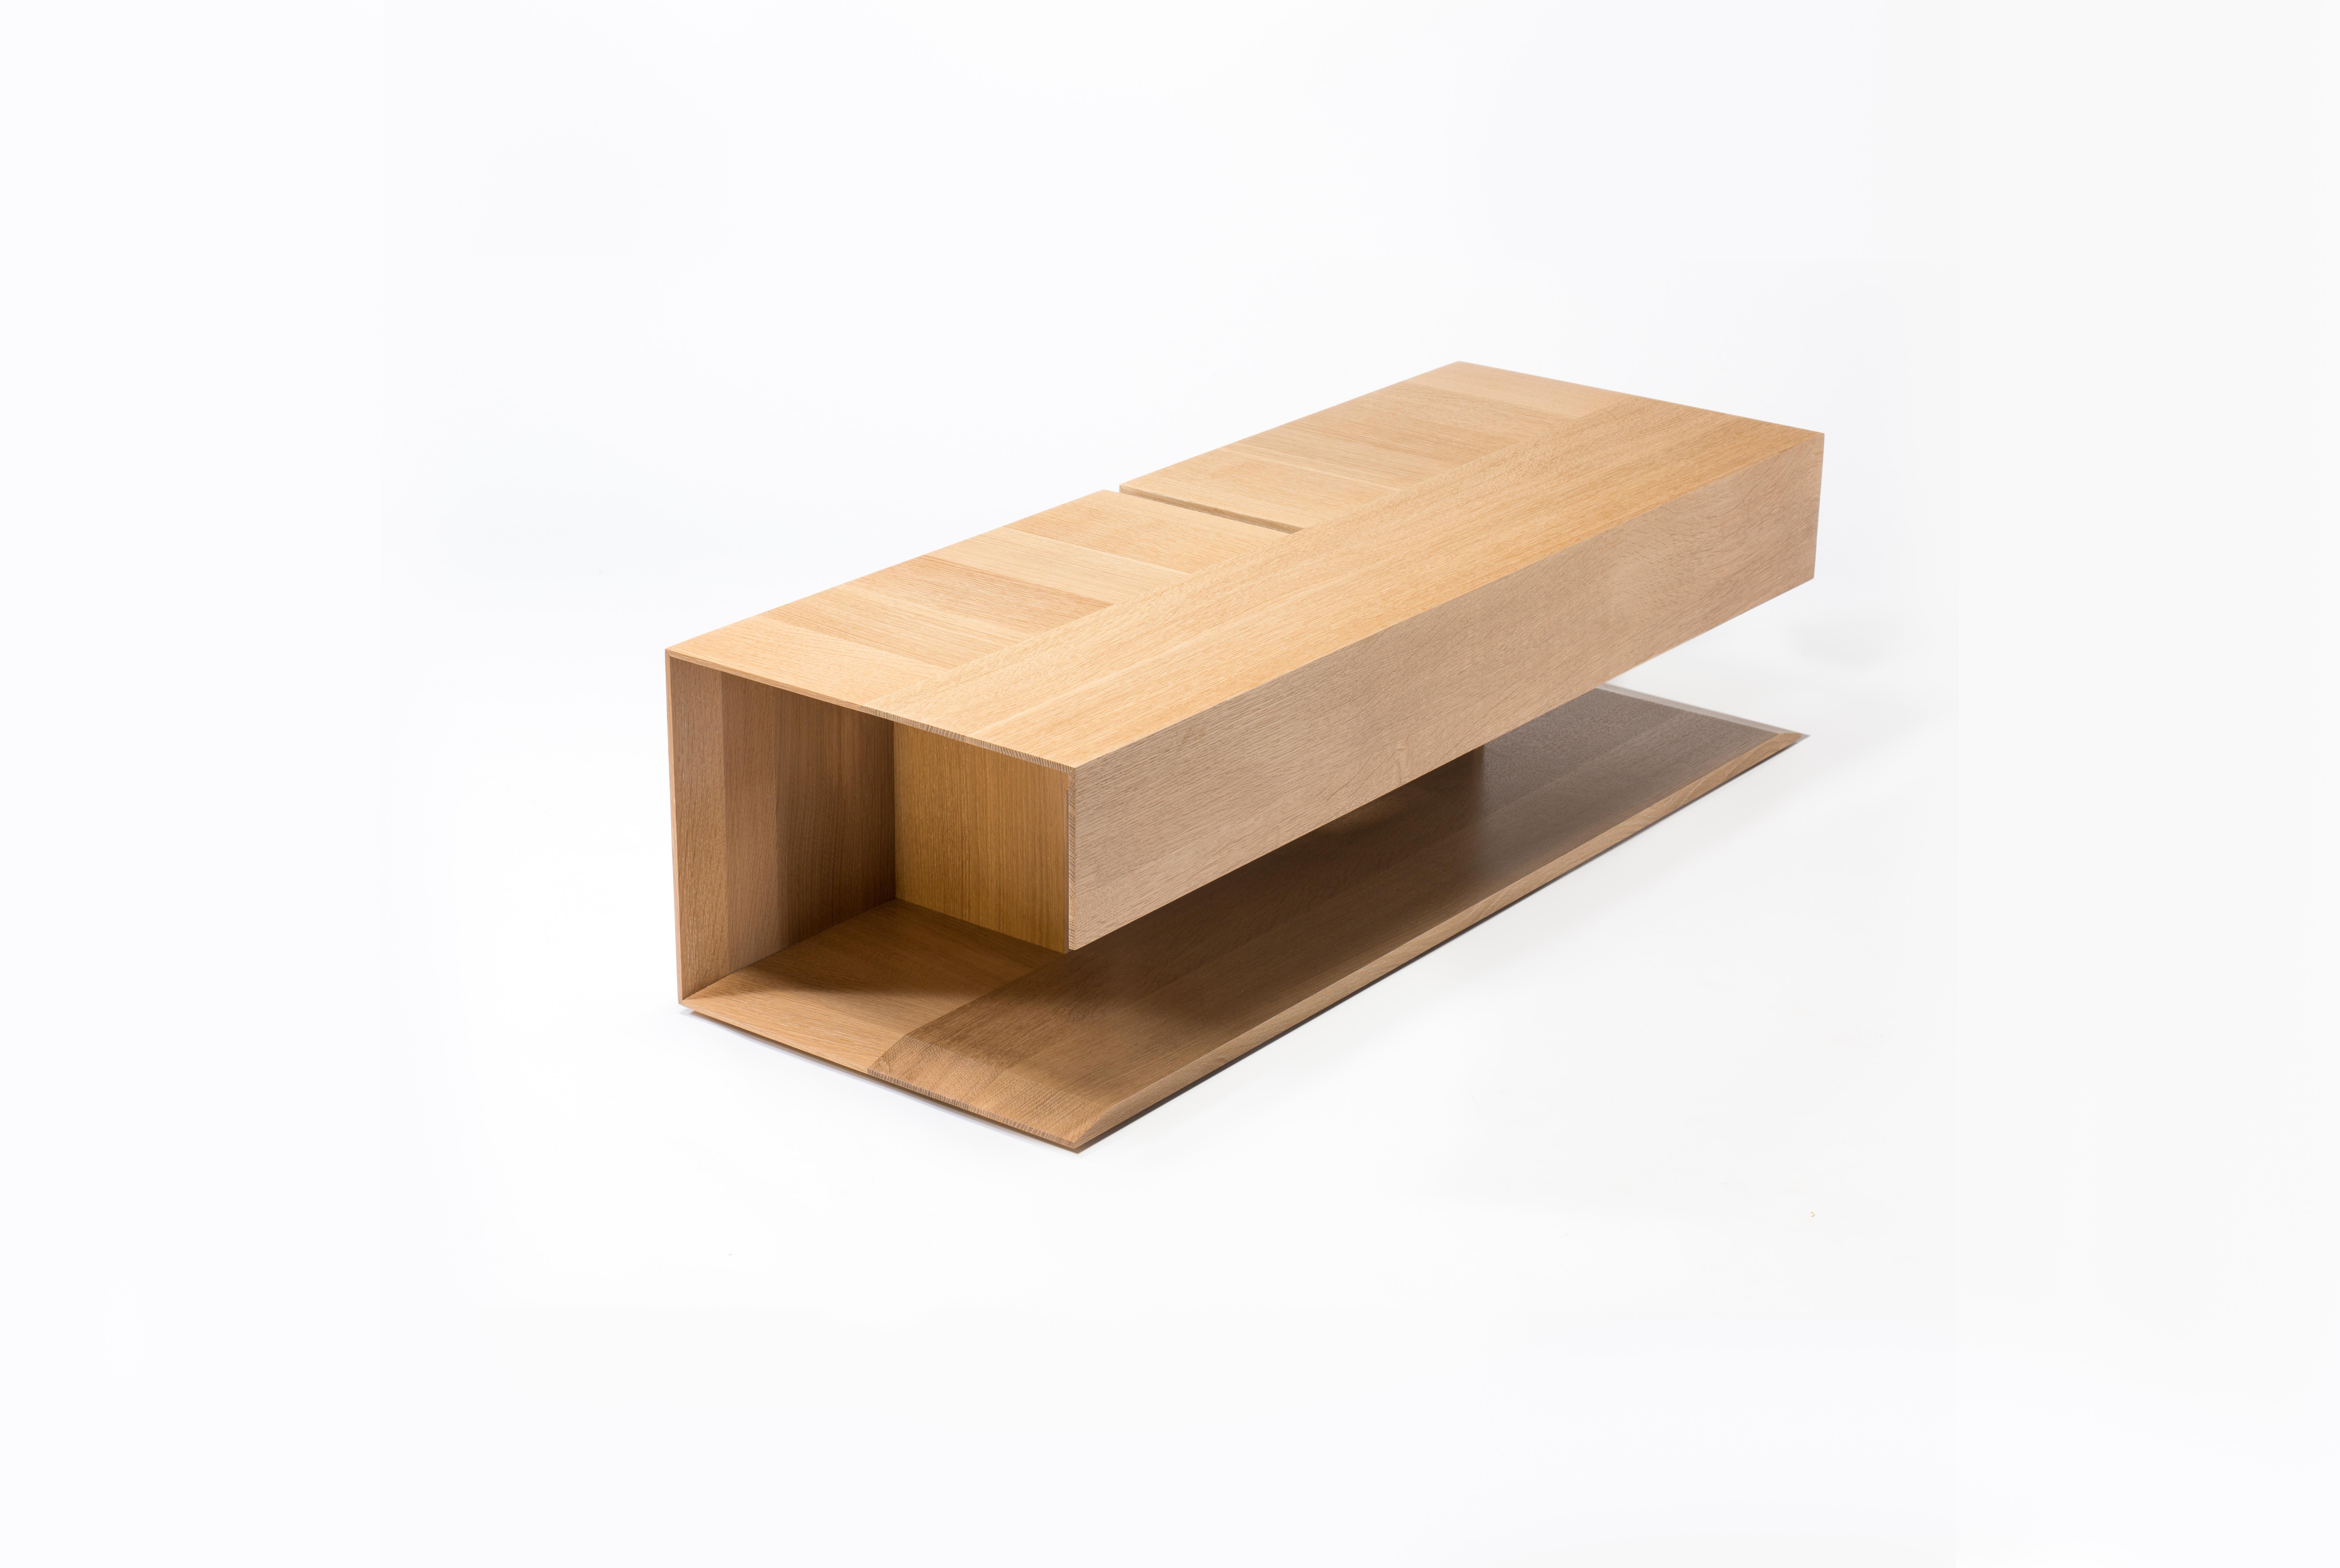 Cette version de notre table basse en bois moderne s'appelle la table 